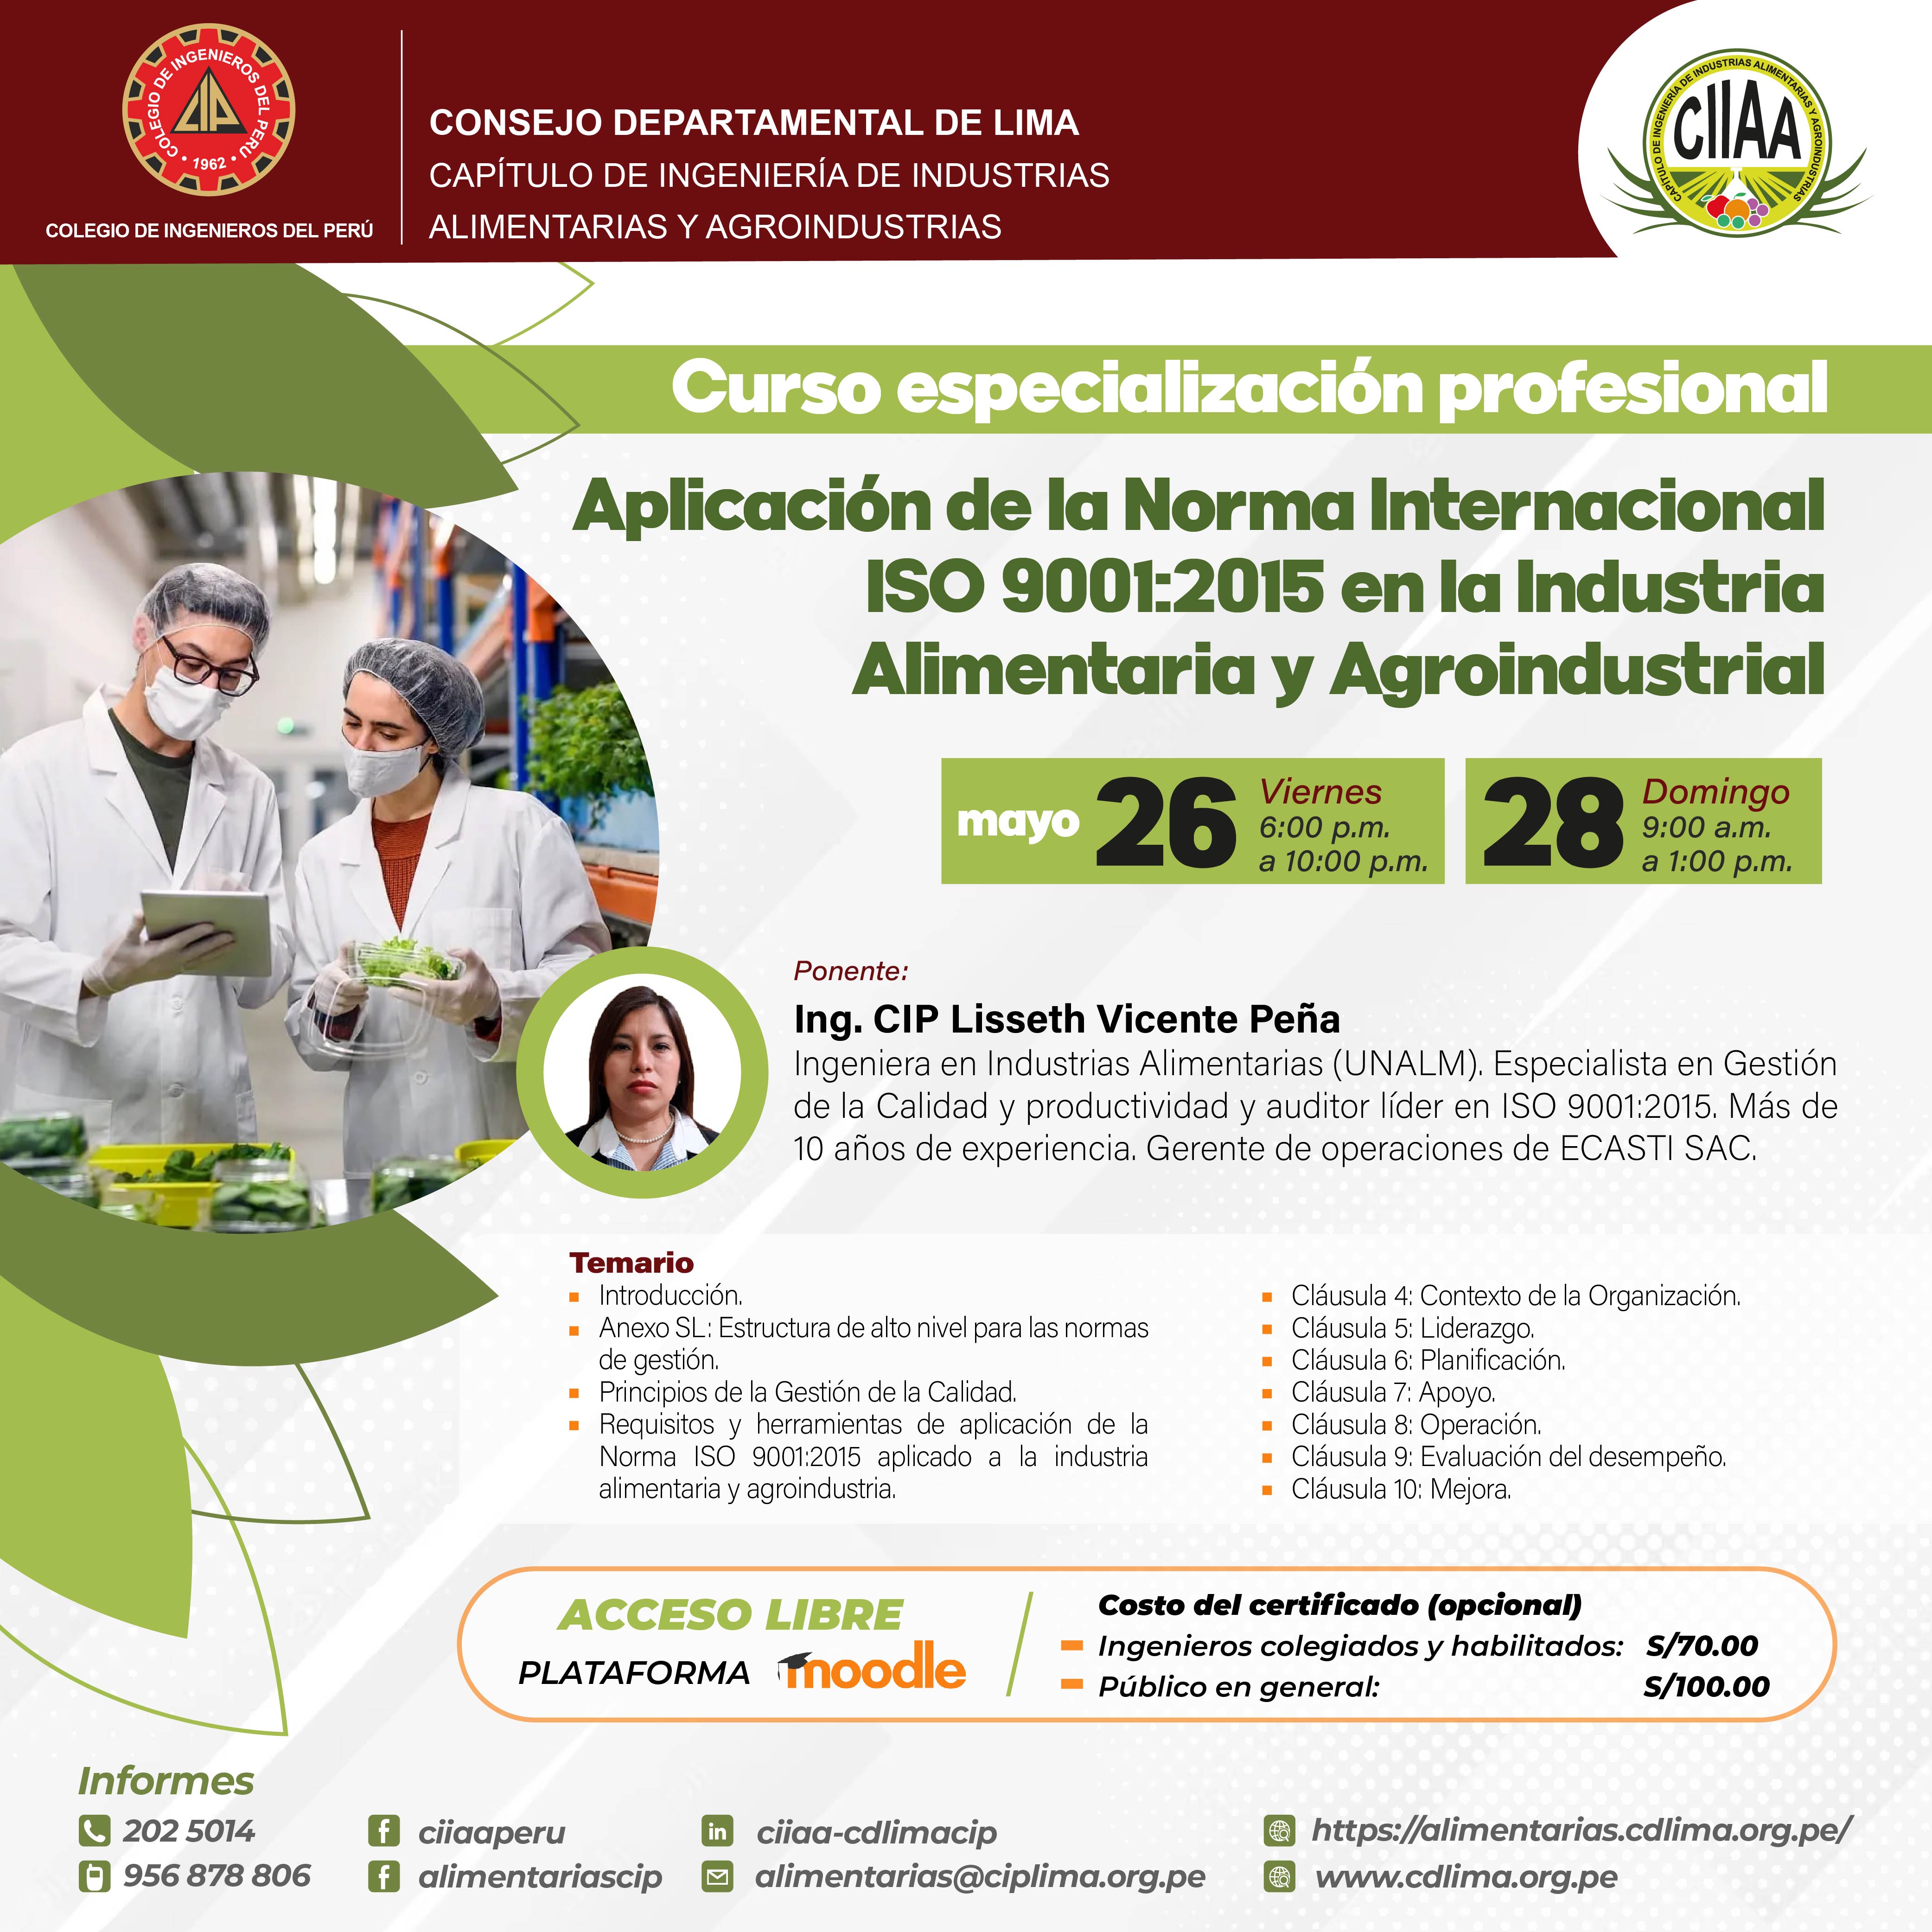 Curso de Especialización Profesional  Aplicación de la Norma Internacional ISO 9001:2015 en la industria Alimentaria y Agroindustrial